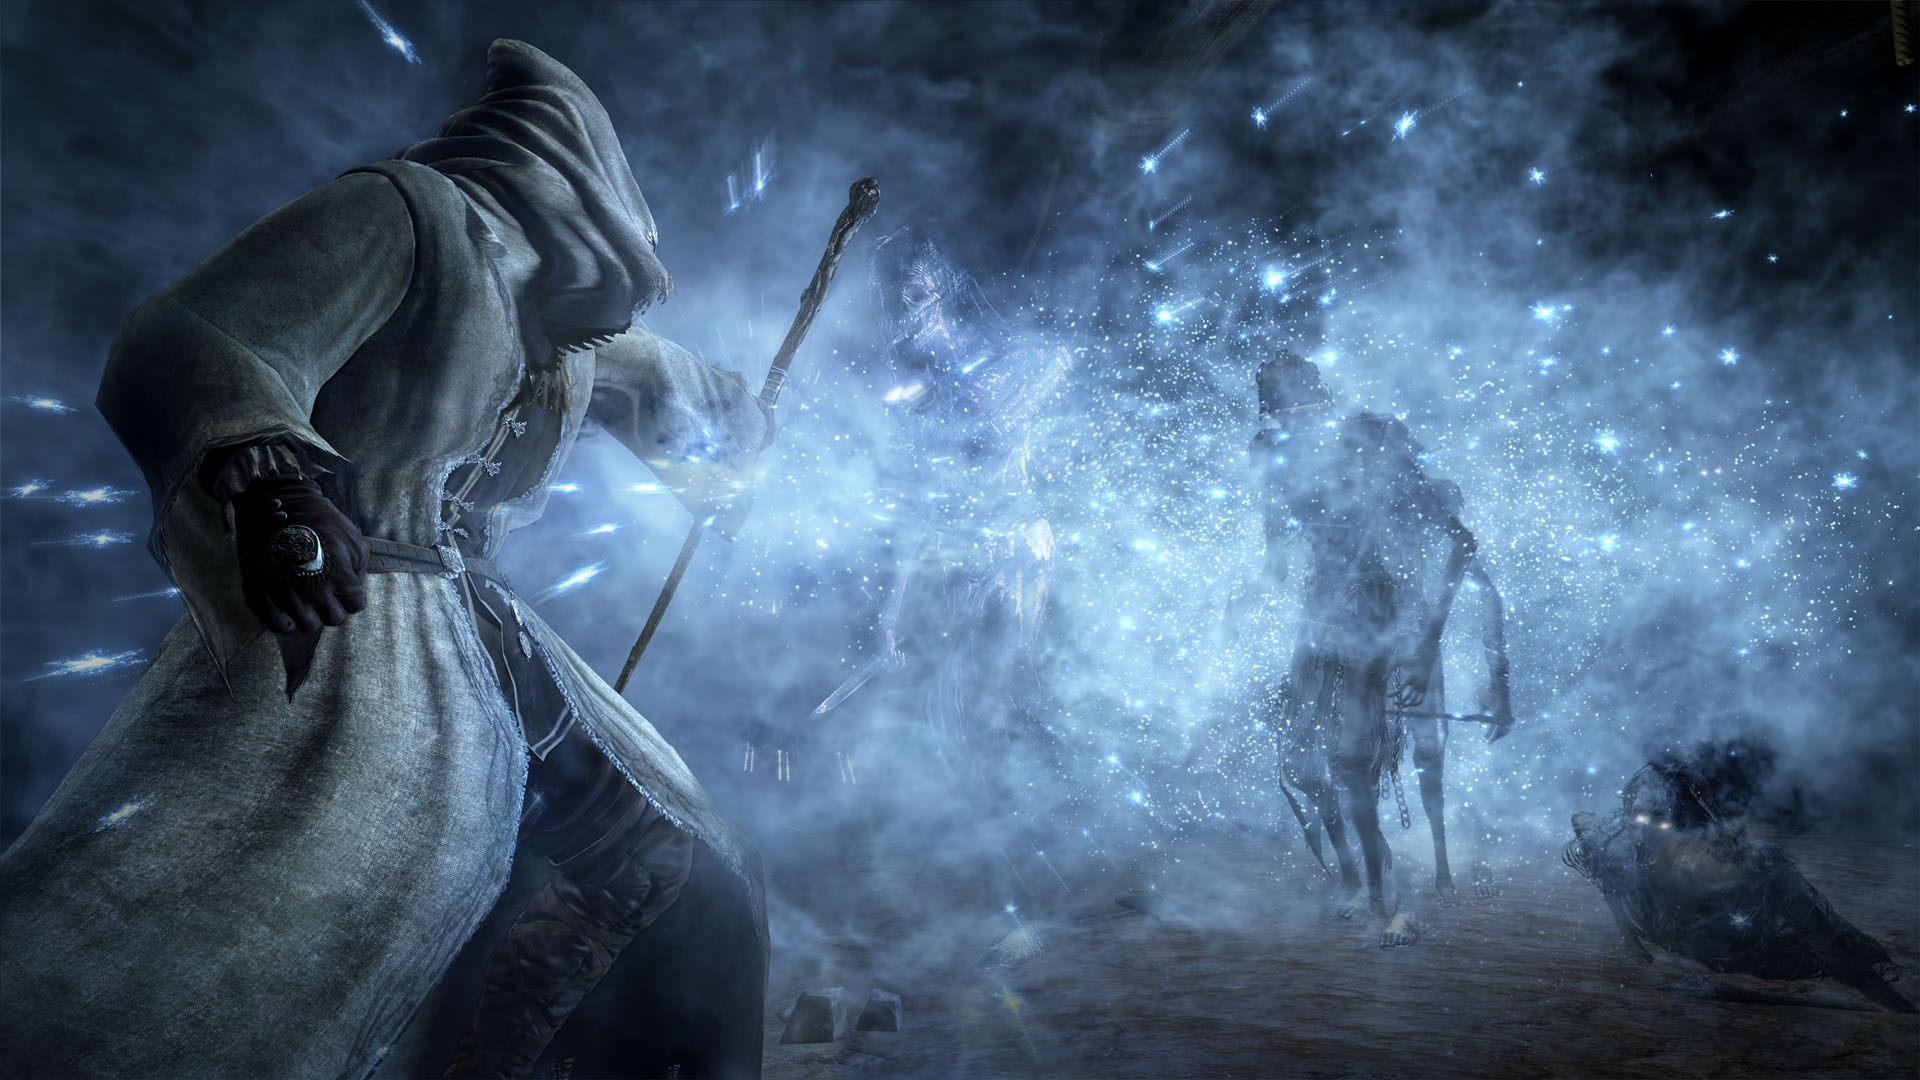 Dark Souls III: Ashes of Ariandel - screenshot 2